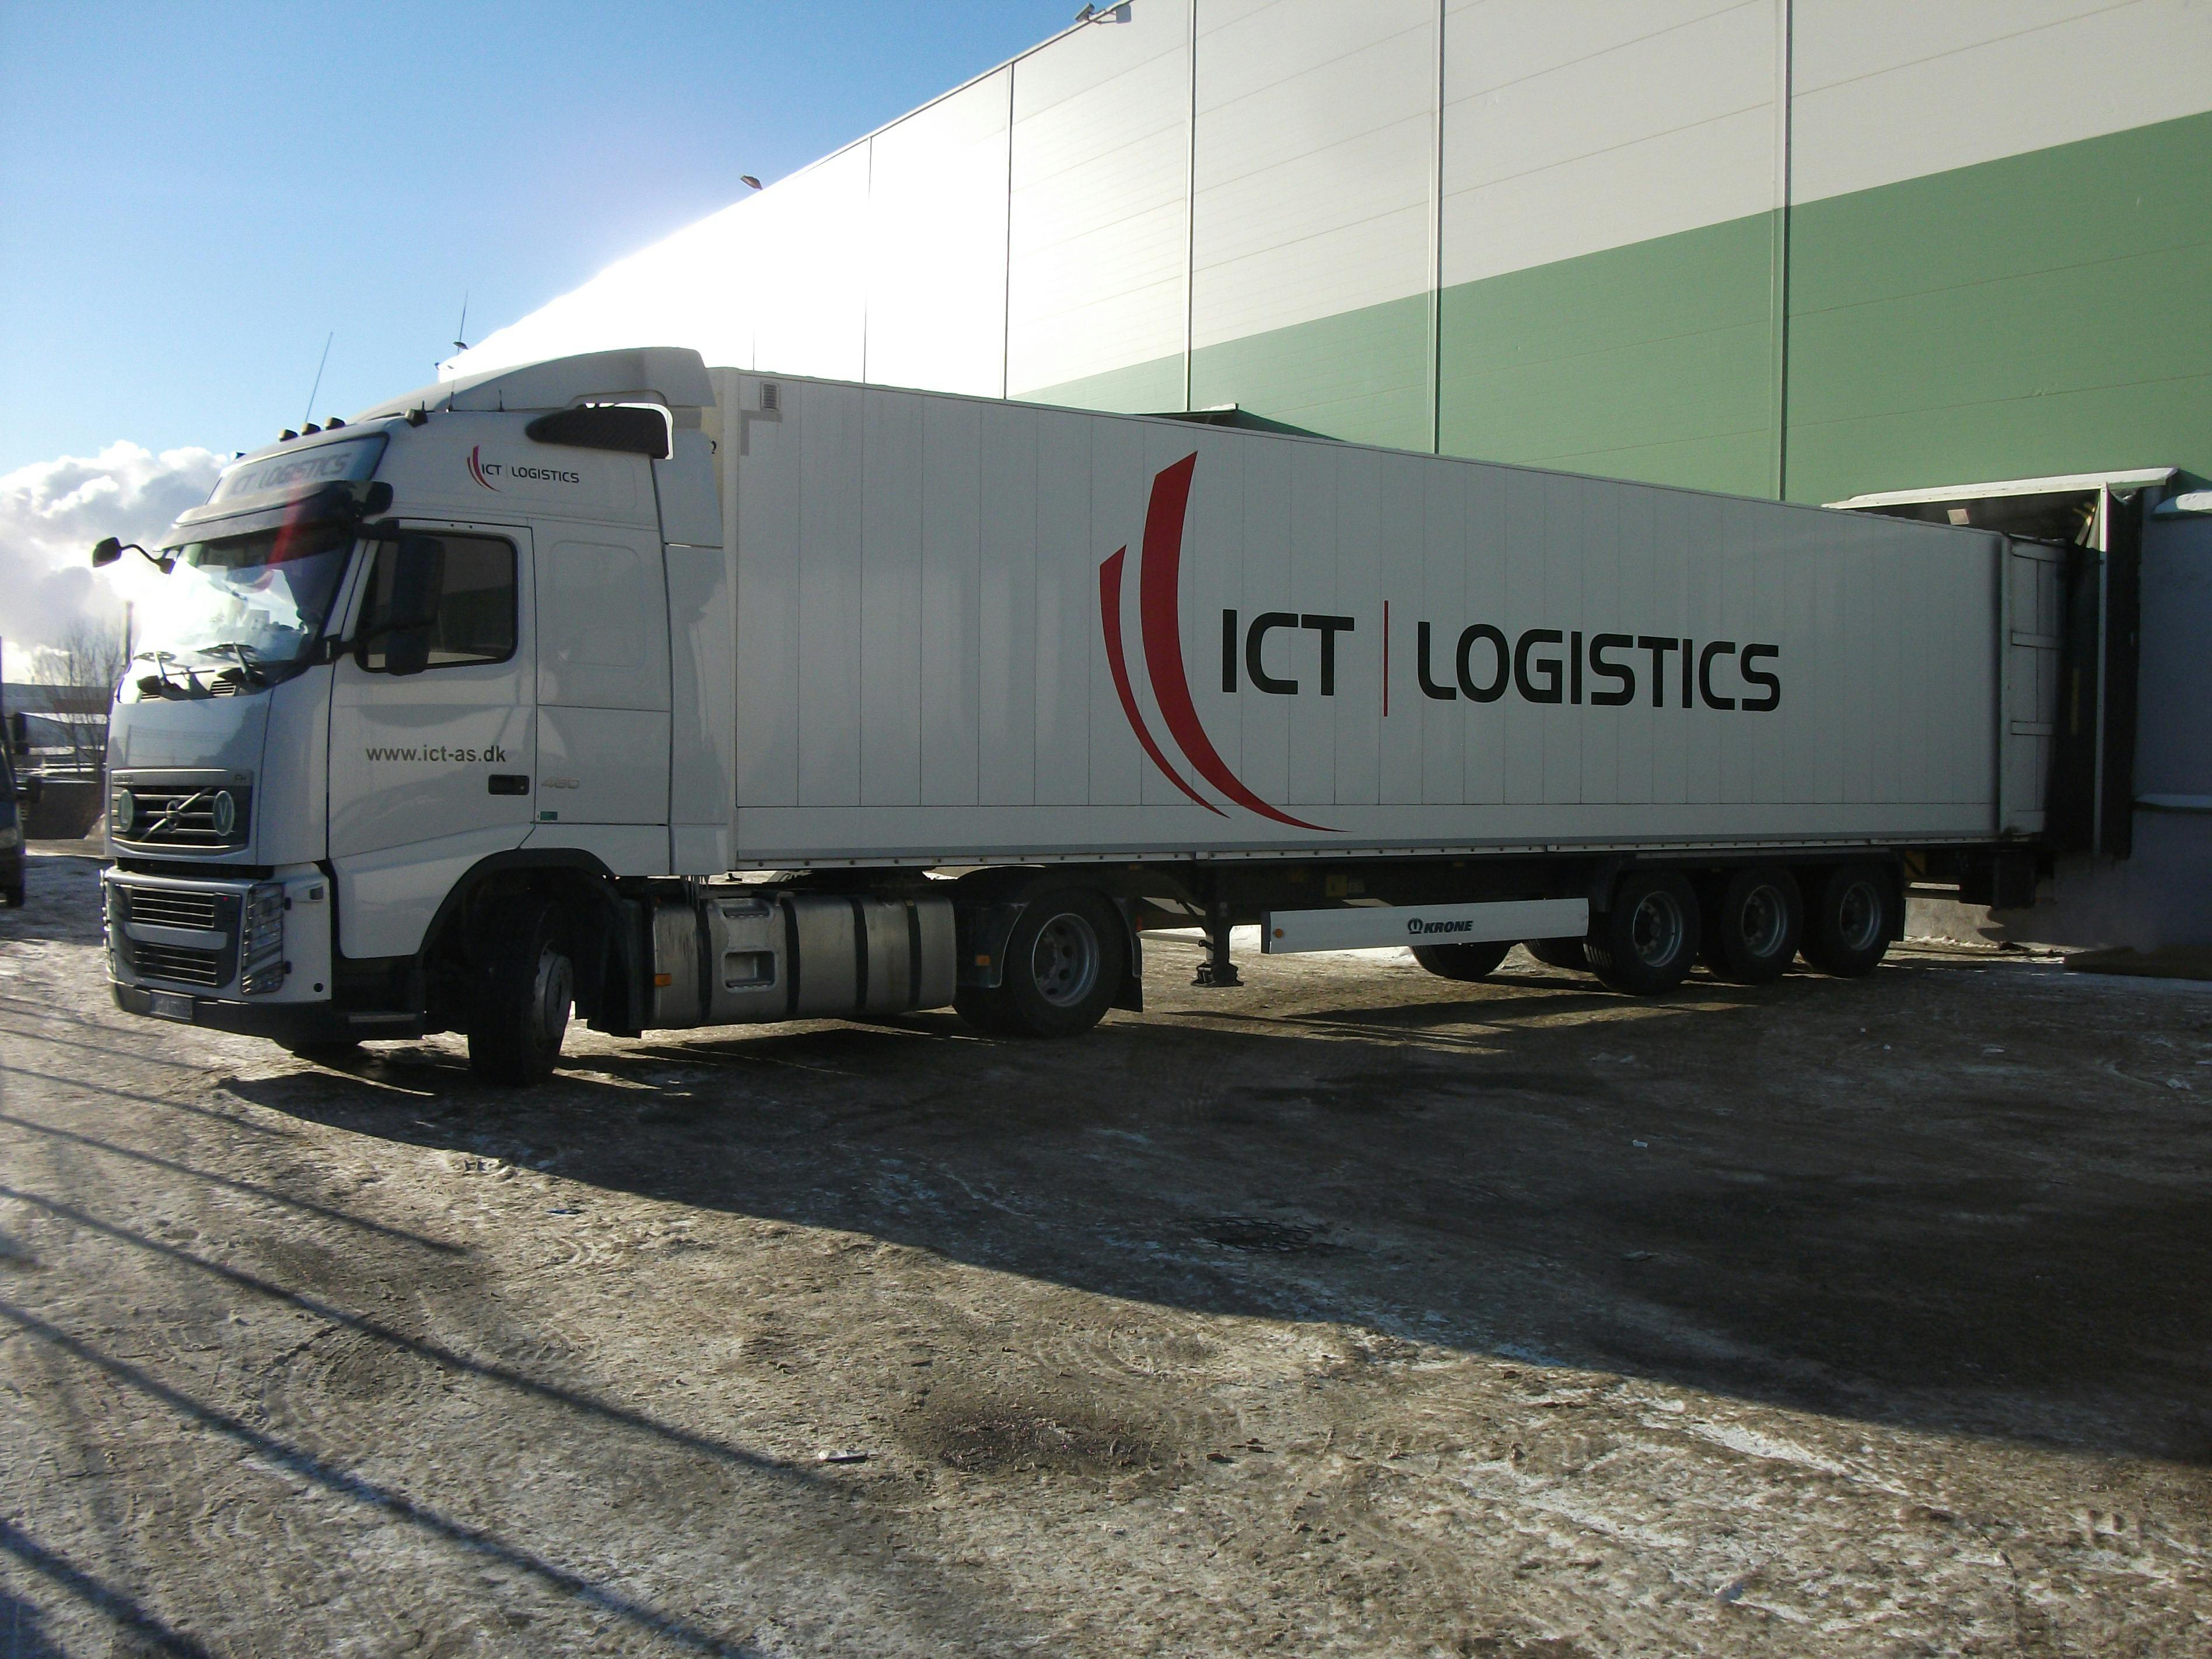 ICT logistics Acquisition